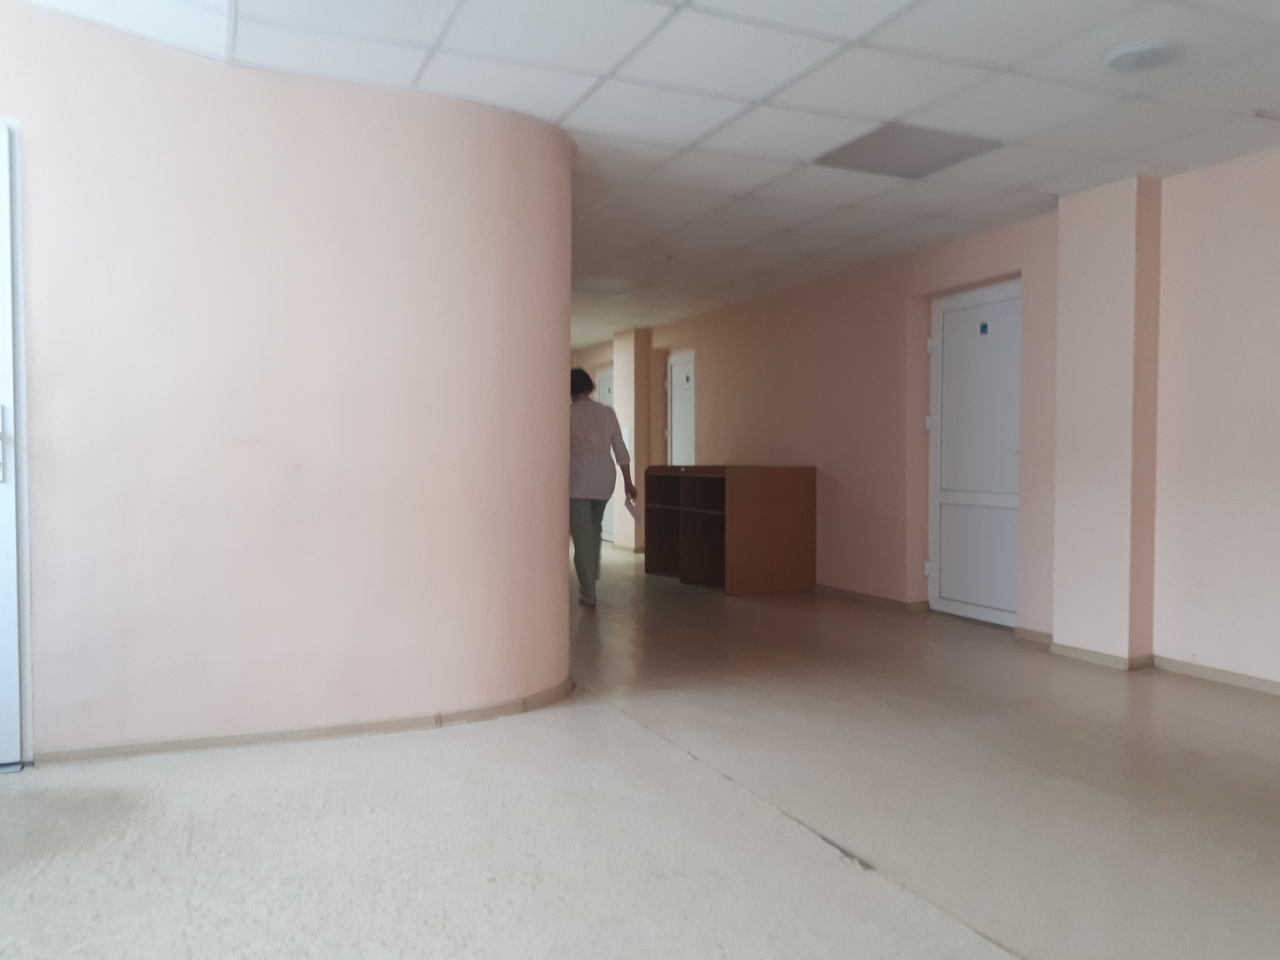 «Нам это не нужно»: врач о минусах строительства ЦБК в Ярославле